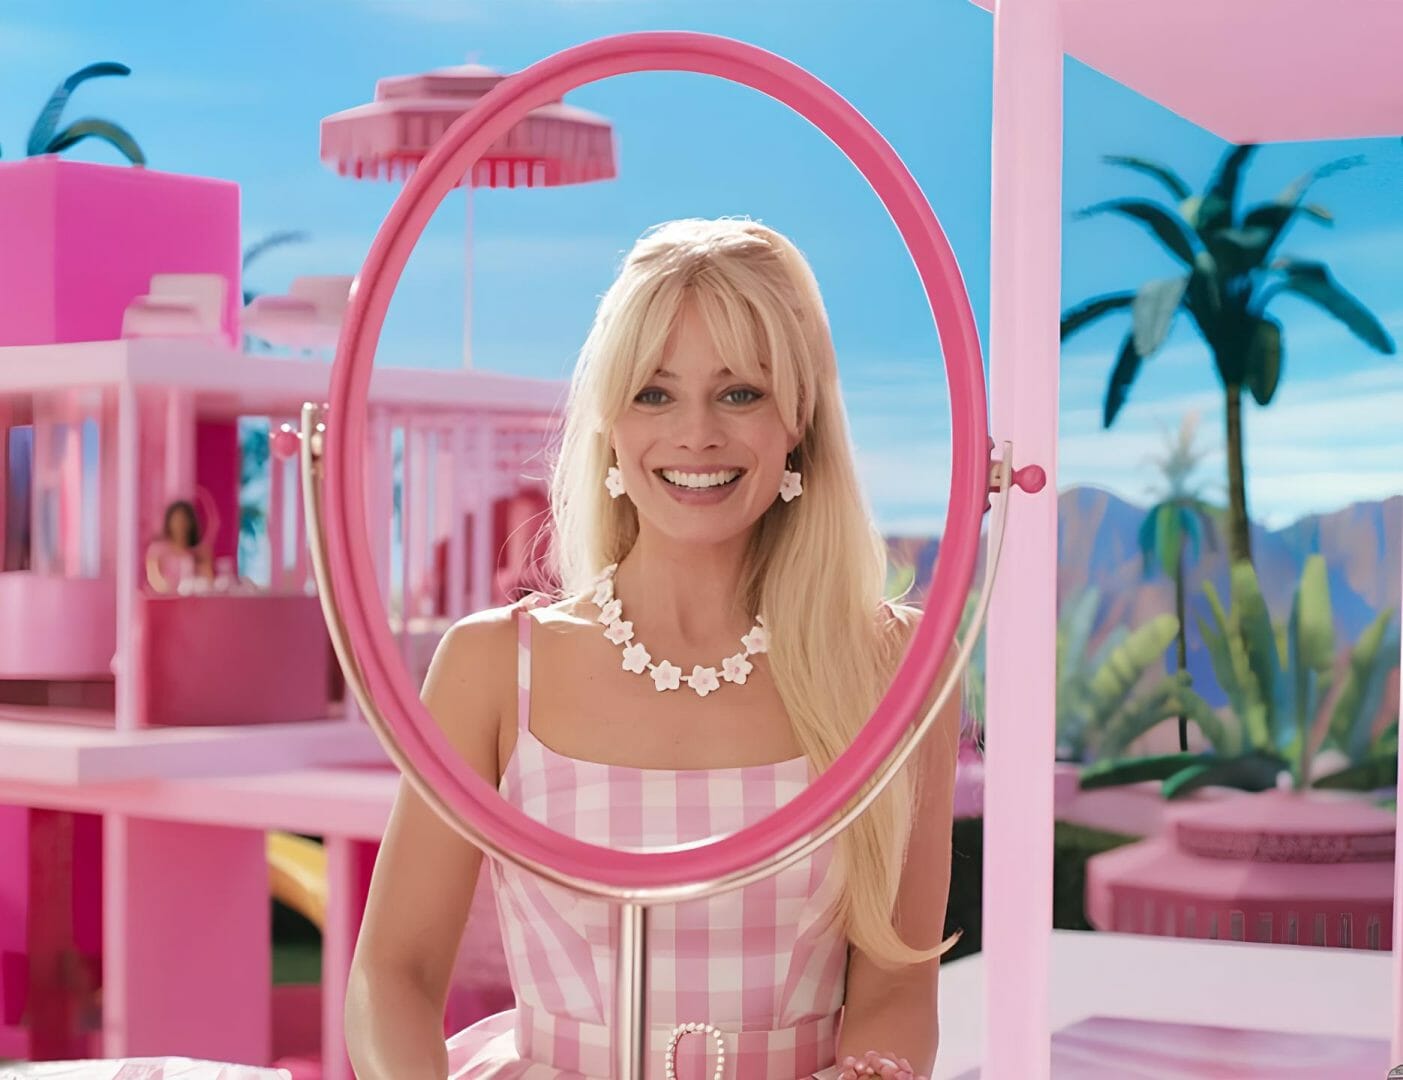 Sucesso: Barbie É A 2ª Maior Estreia No Brasil, Levando 1,2 Milhão De Pessoas Aos Cinemas